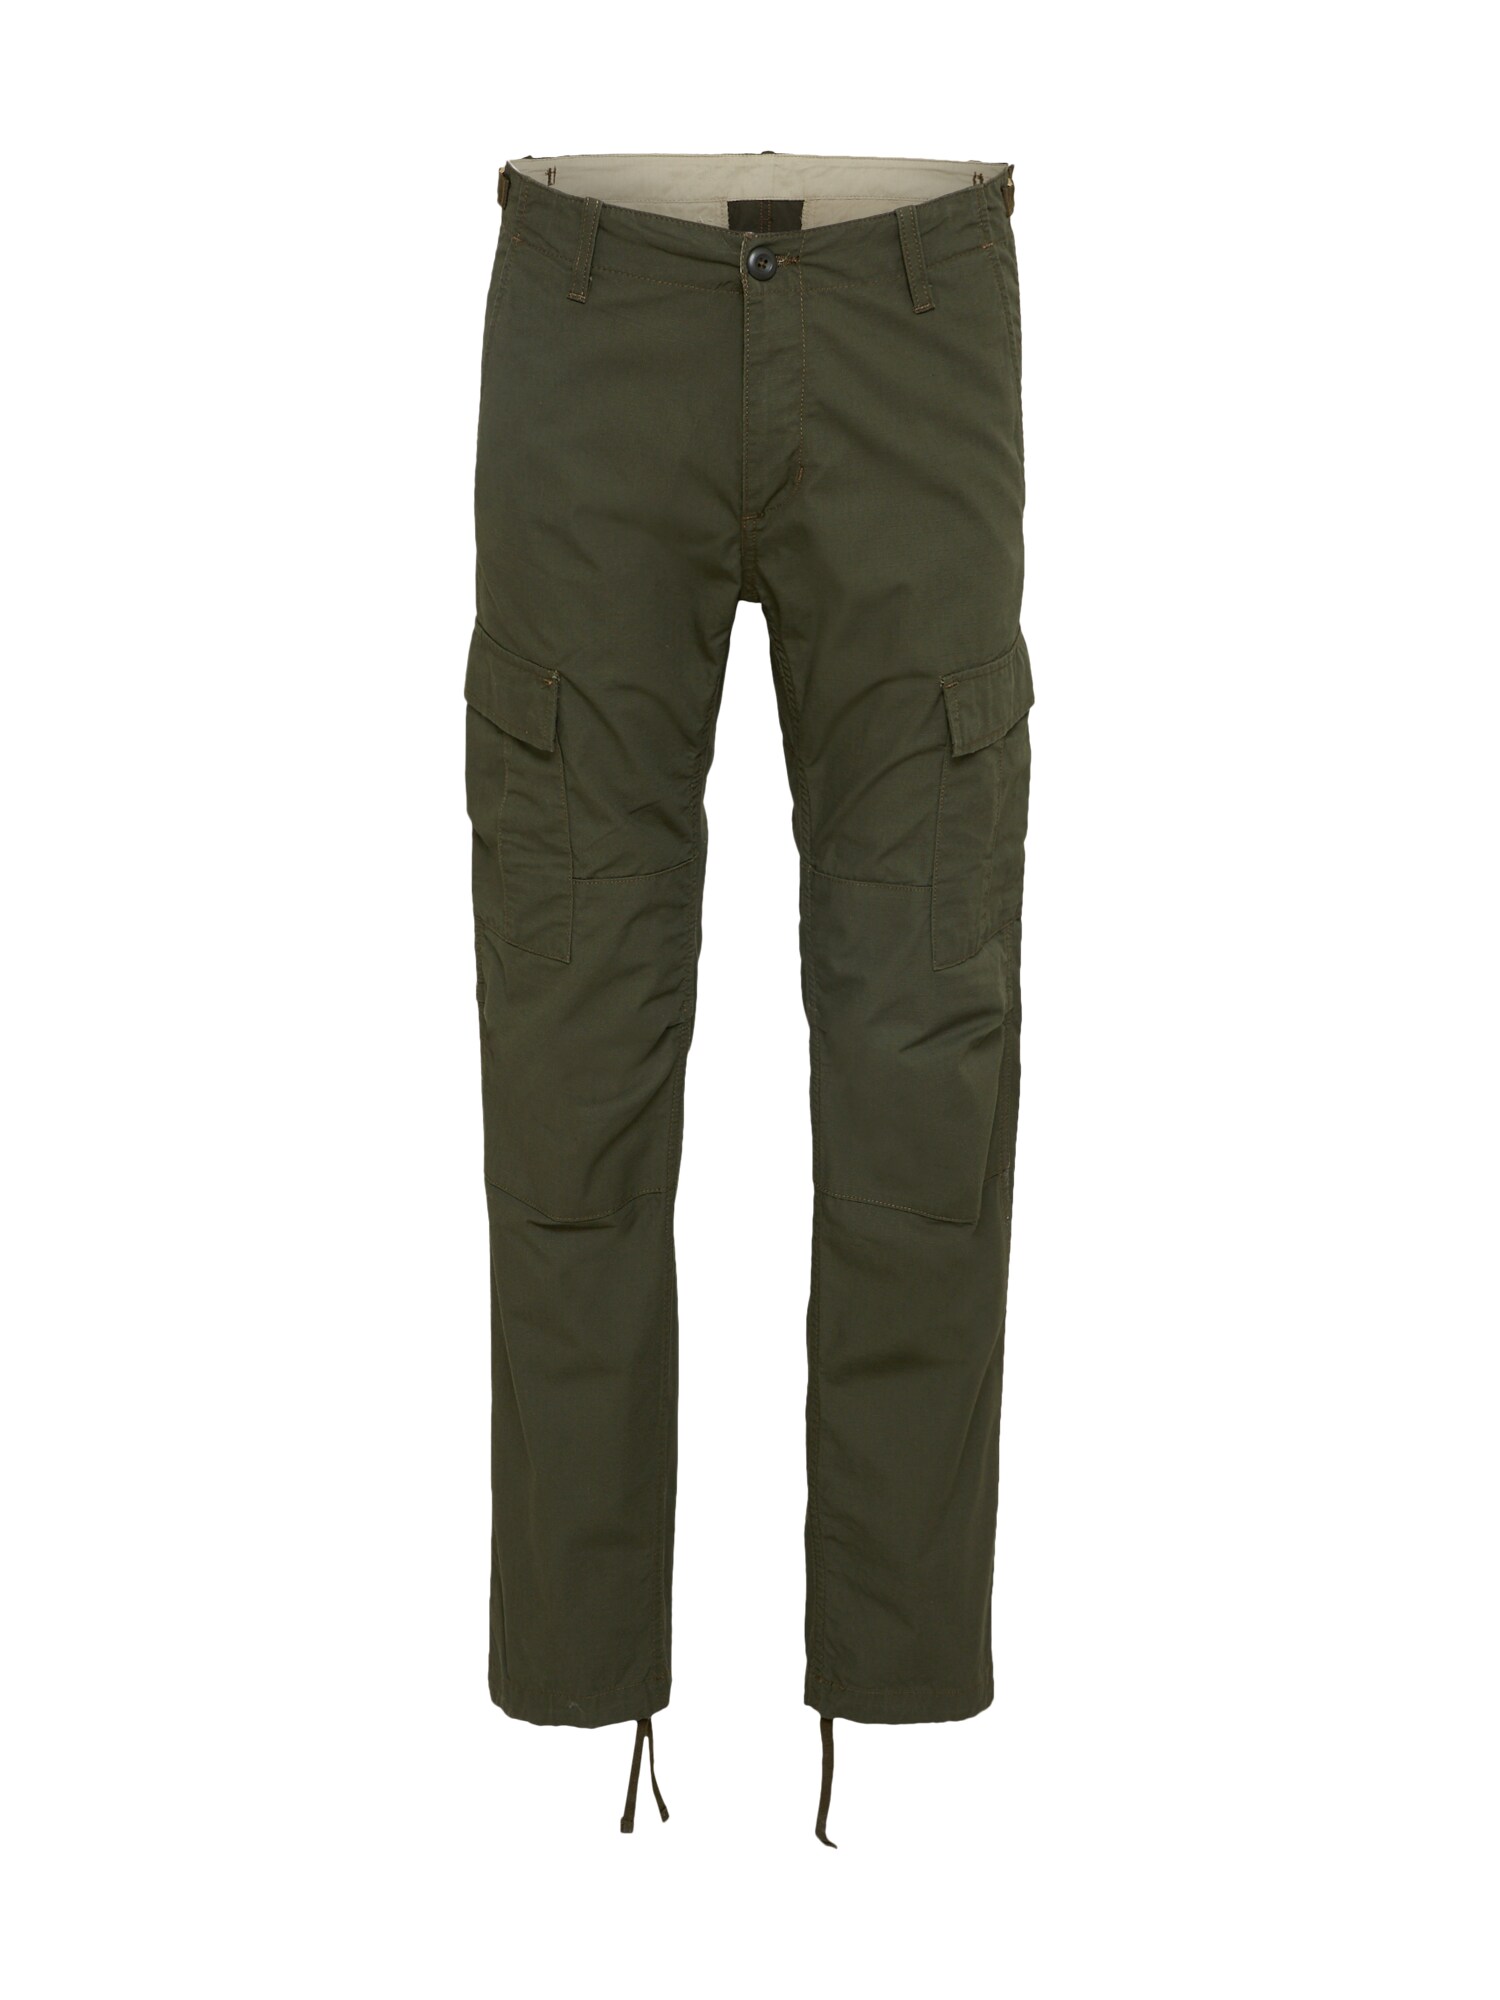 Carhartt WIP Laisvo stiliaus kelnės 'Aviation Pant'  alyvuogių spalva / tamsiai žalia